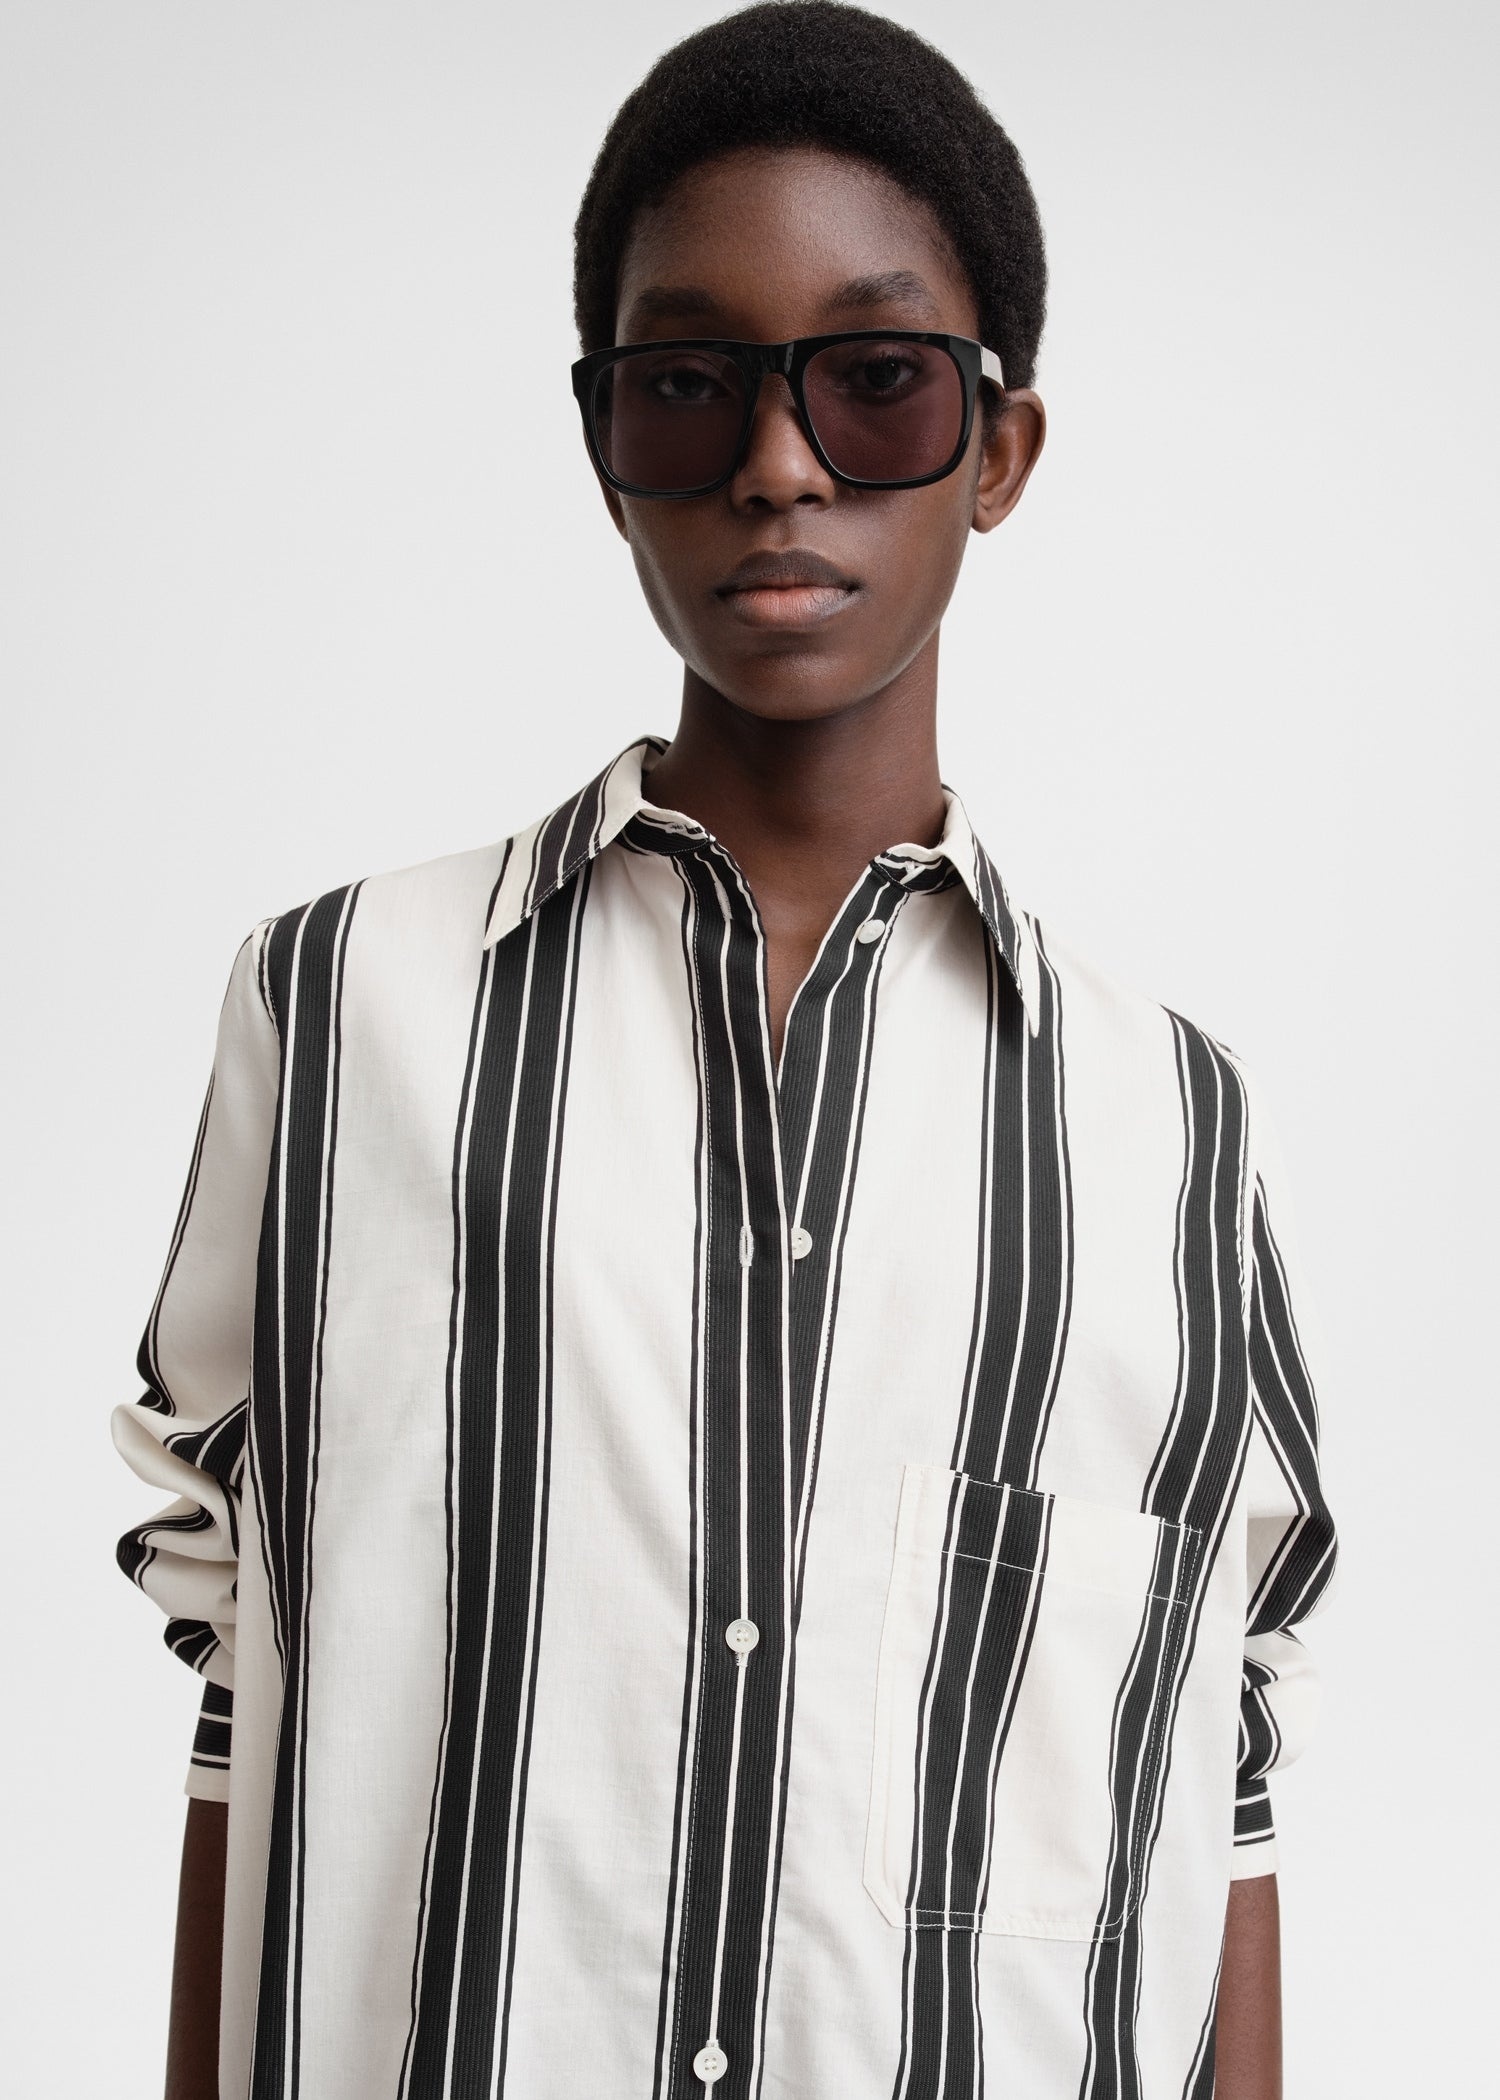 Jacquard-striped tunic dress black/white - 5